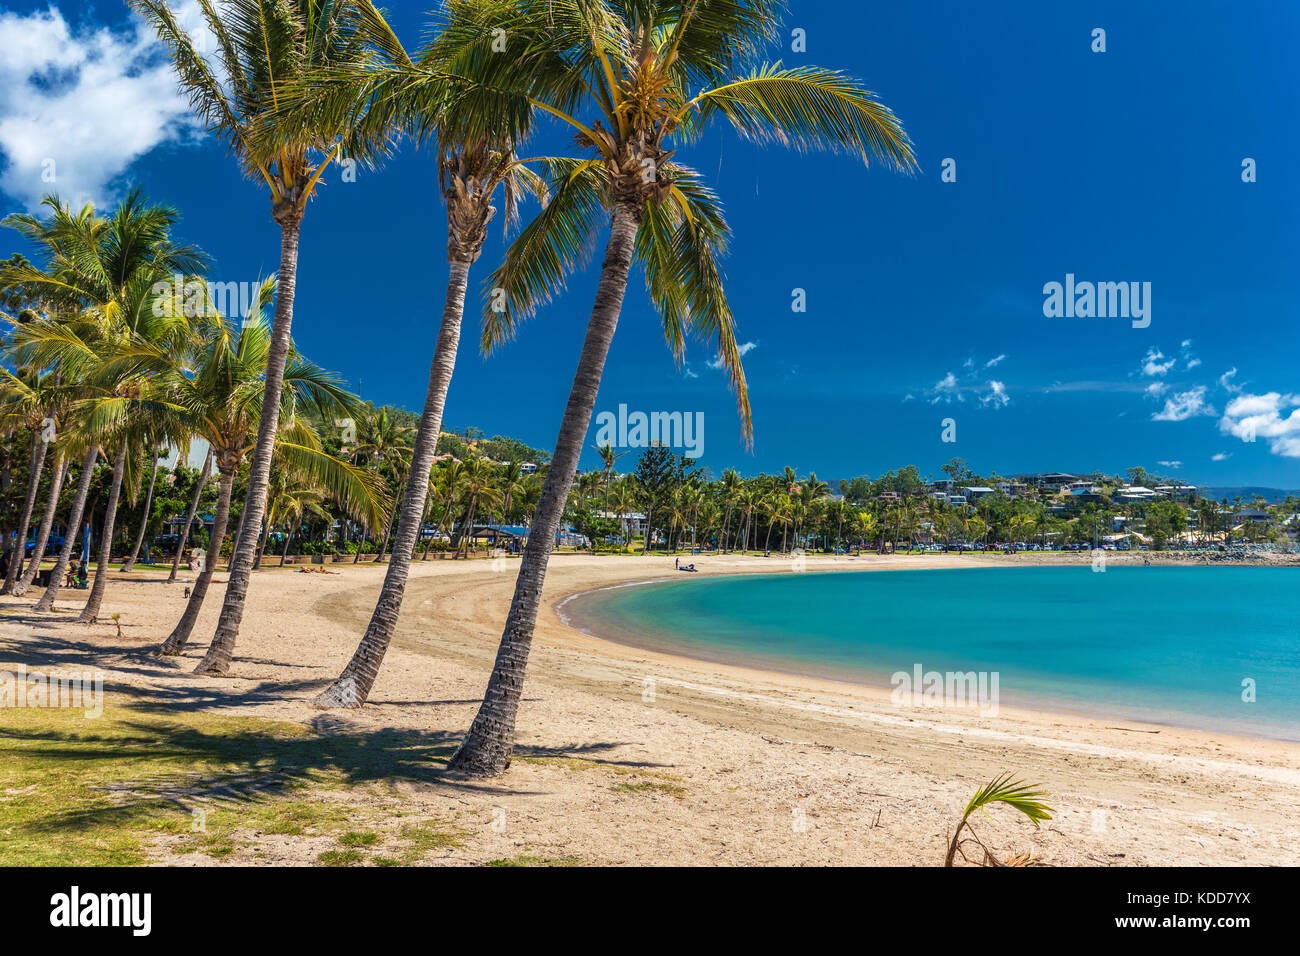 Chaude journée ensoleillée sur la plage de sable avec des palmiers, Airlie Beach, Whitsundays, Queensland Australie Banque D'Images